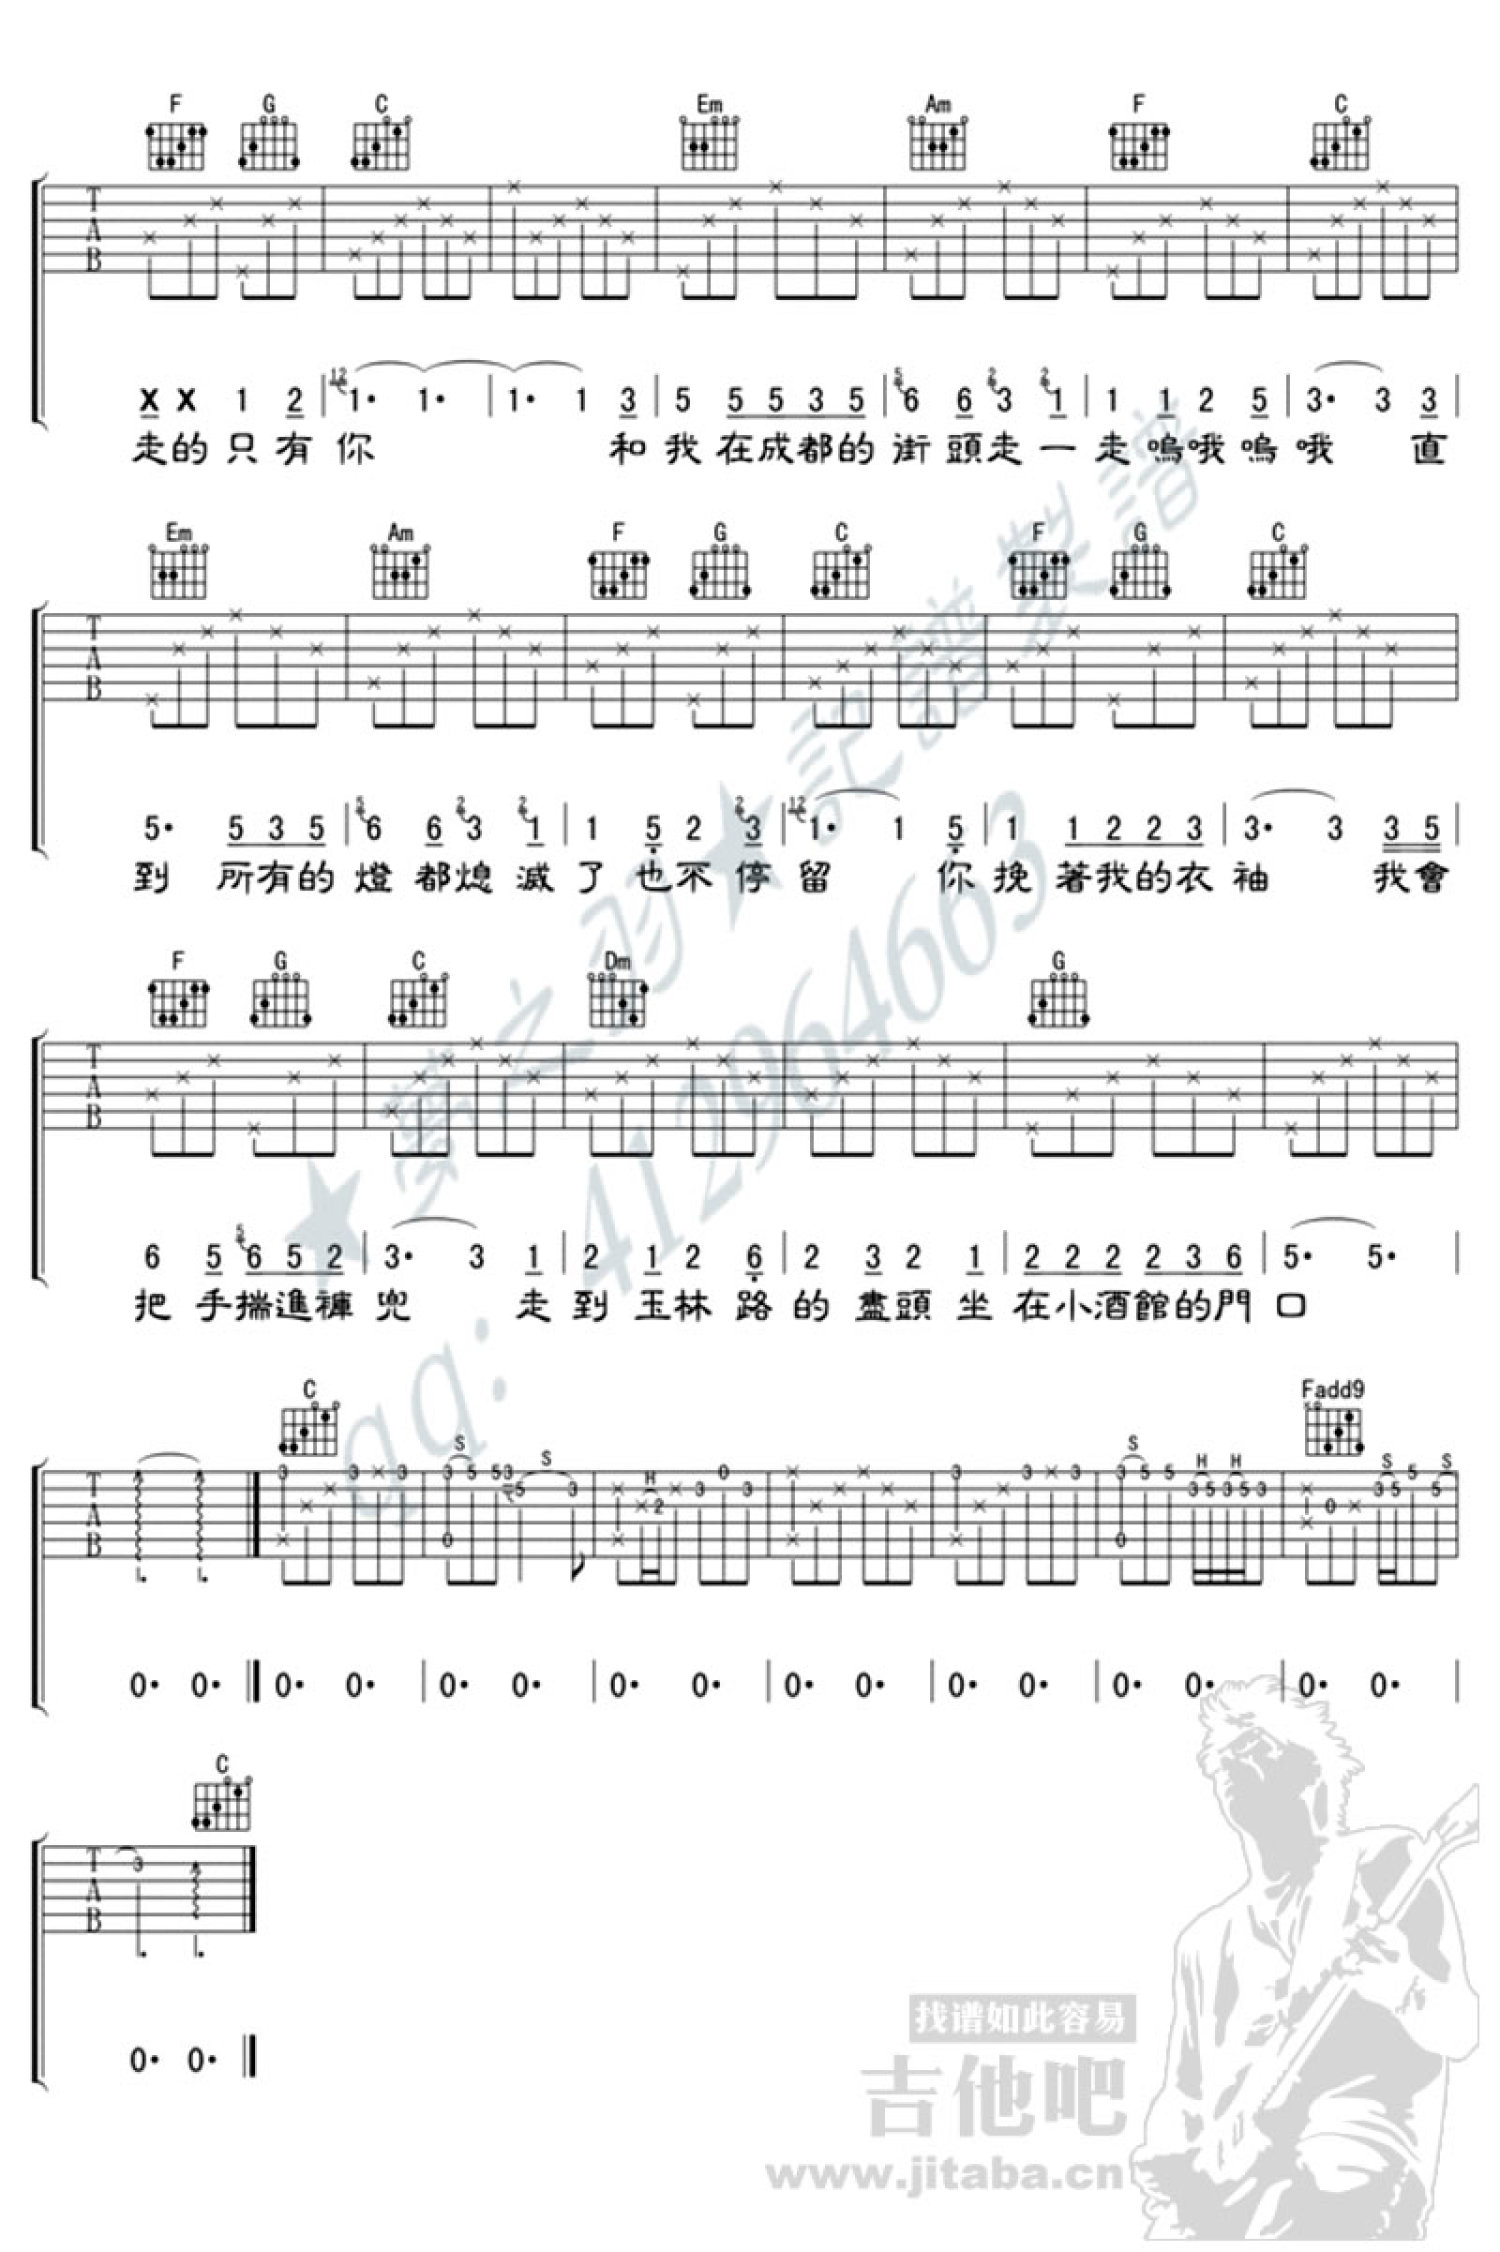 写给成都的歌 - 赵雷 - 吉他谱(简单吉他编配制谱) - 嗨吉他